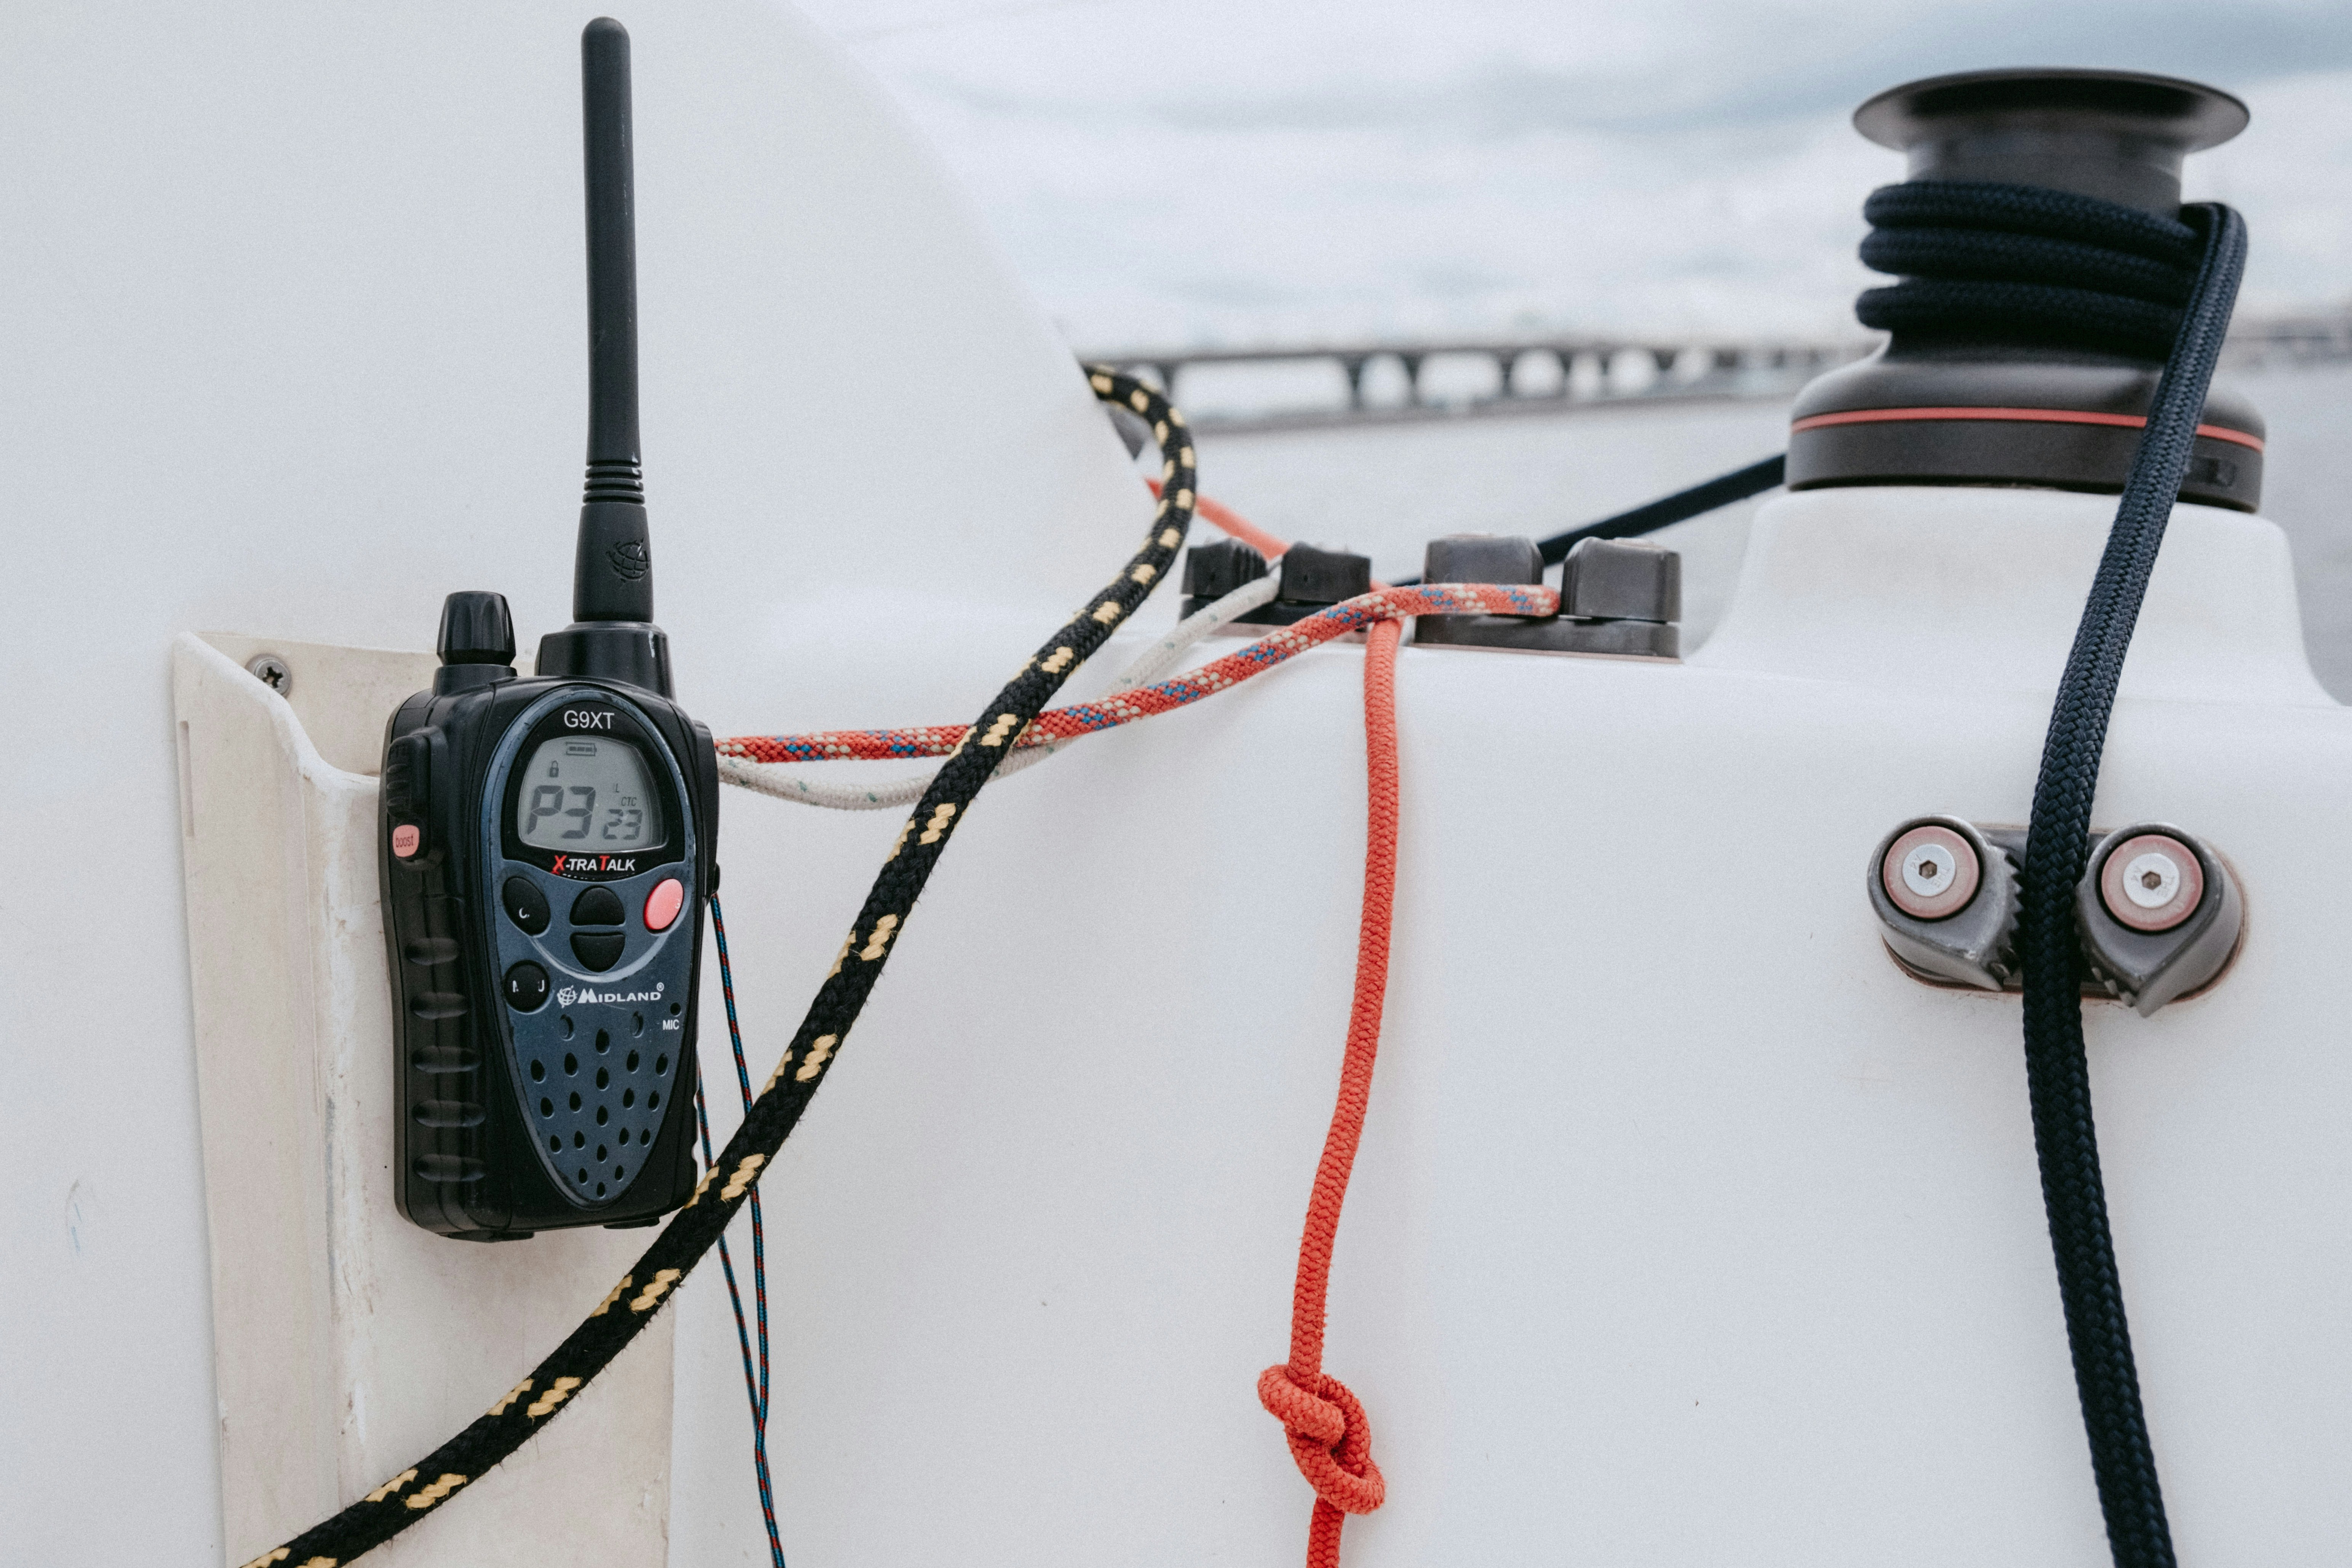 Kvalitní vysílačka patří k základnímu vybavení jachty